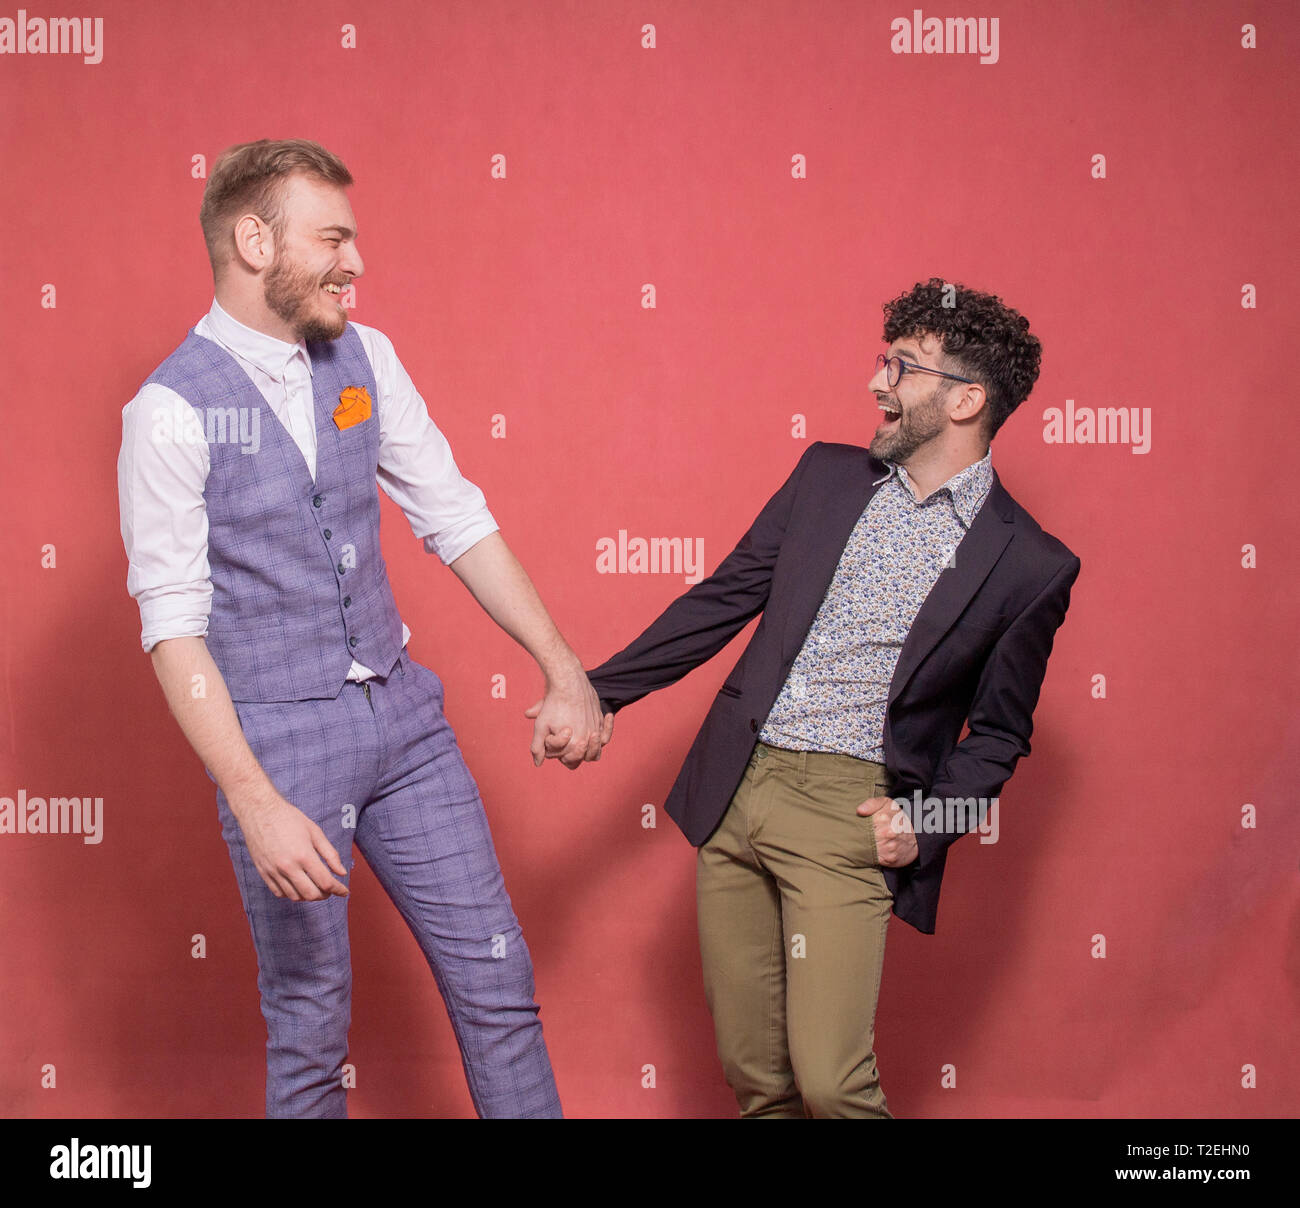 Deux hommes, trop quitté tout en tenant la main couple gay photo-shoot en studio (fond rose). regarder, face à face. smiling, HAP Banque D'Images